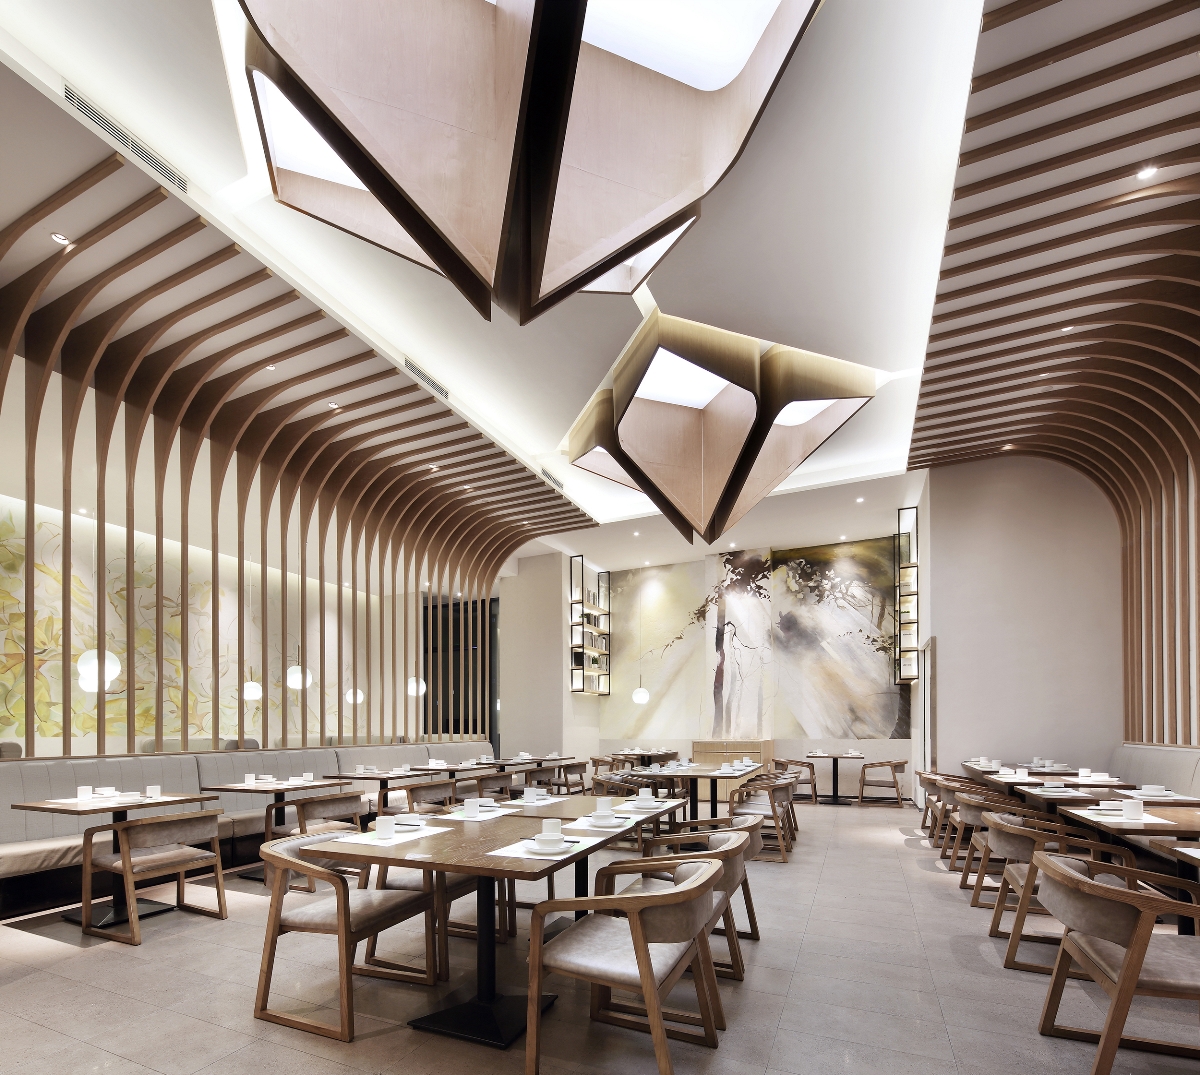 郑州主题餐厅设计郑州餐厅设计空间设计郑州时尚餐厅设计郑州特色餐厅